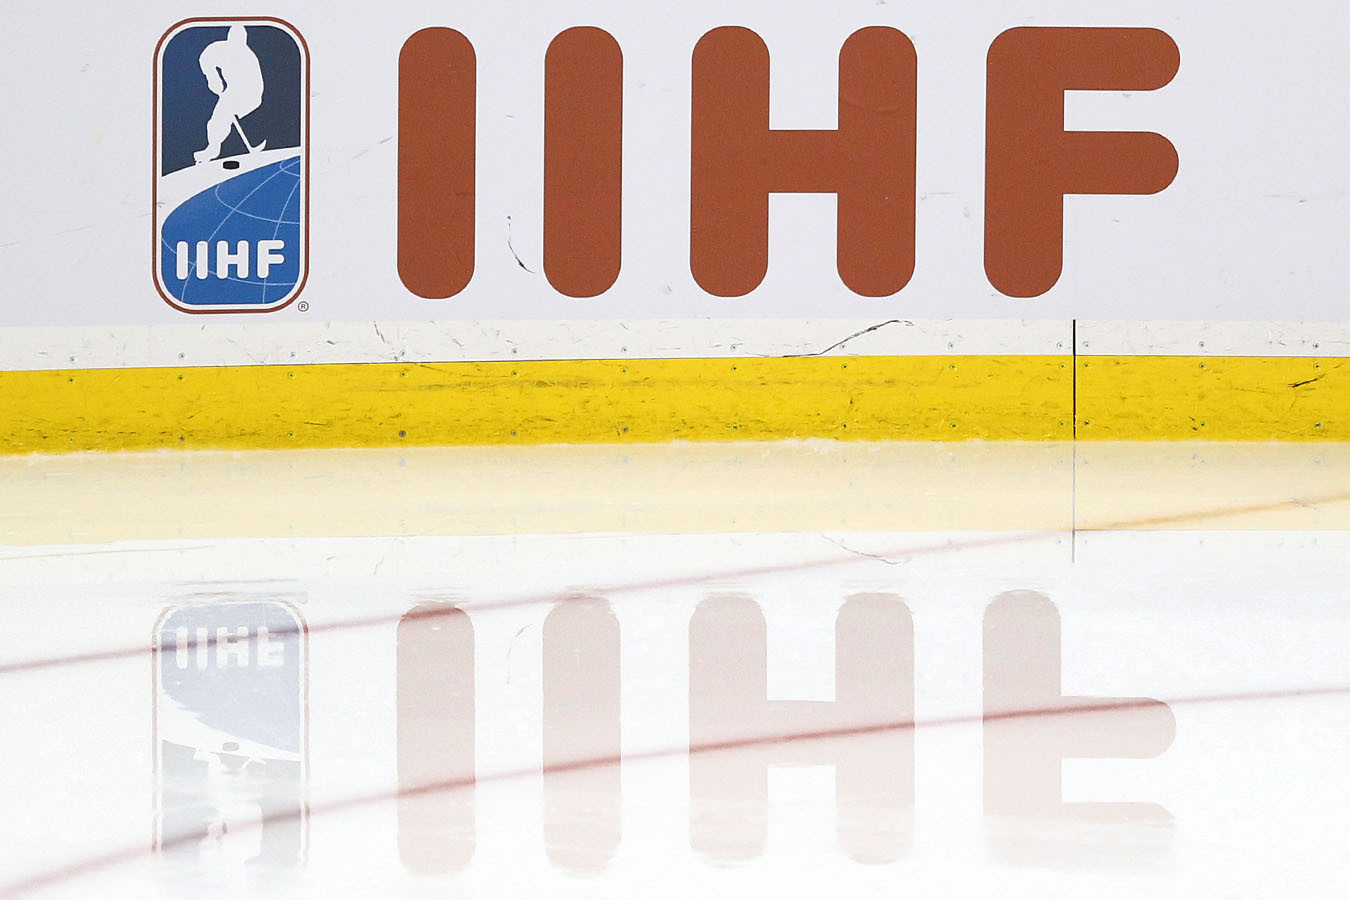 98 из 119 членов конгресса Международной федерации хоккея поддержали принципы возвращения сборной России, но президент ИИХФ призывает не торопиться